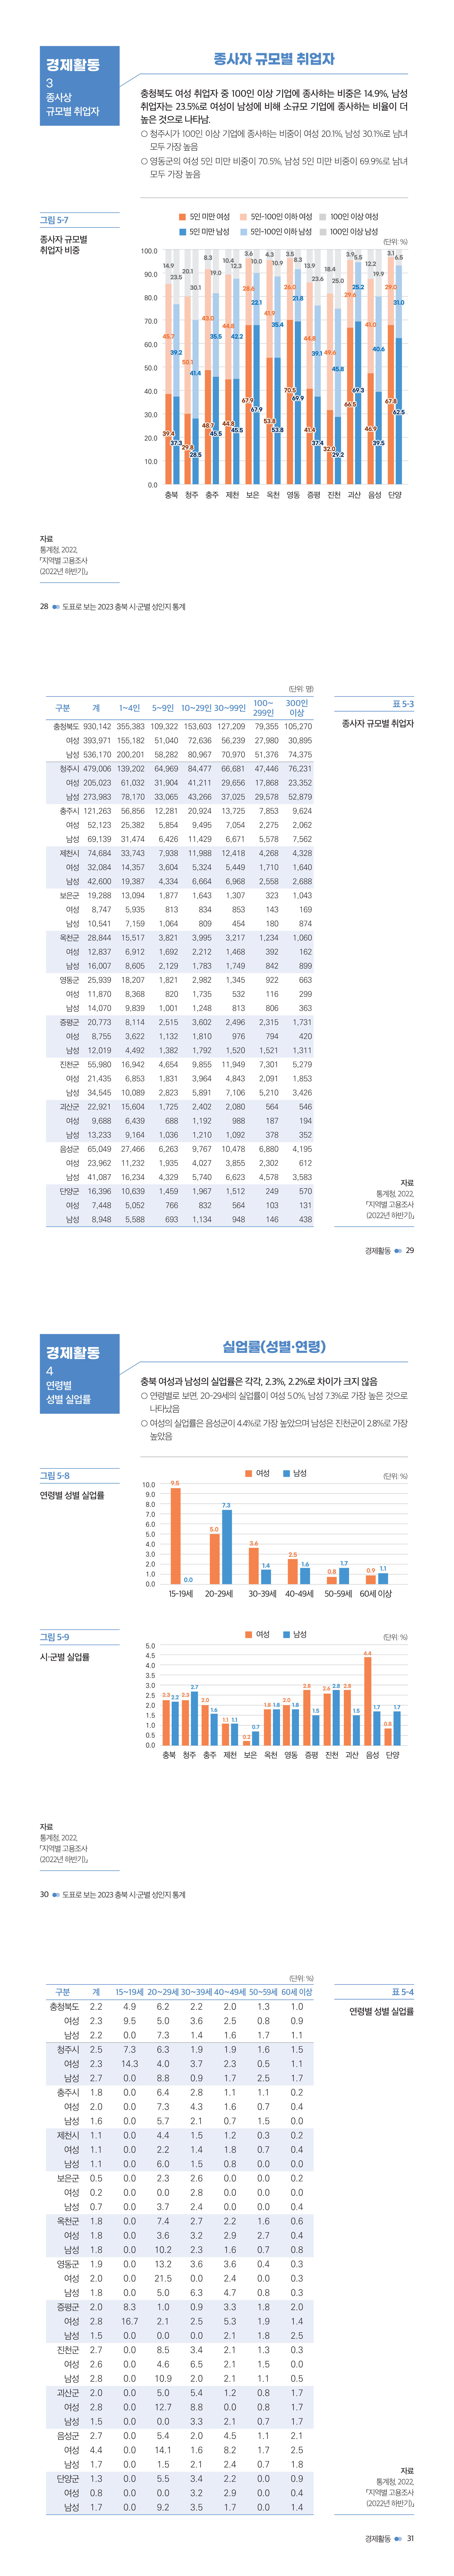 충북여성재단-성인지통계(인포)_웹용_경제2.jpg